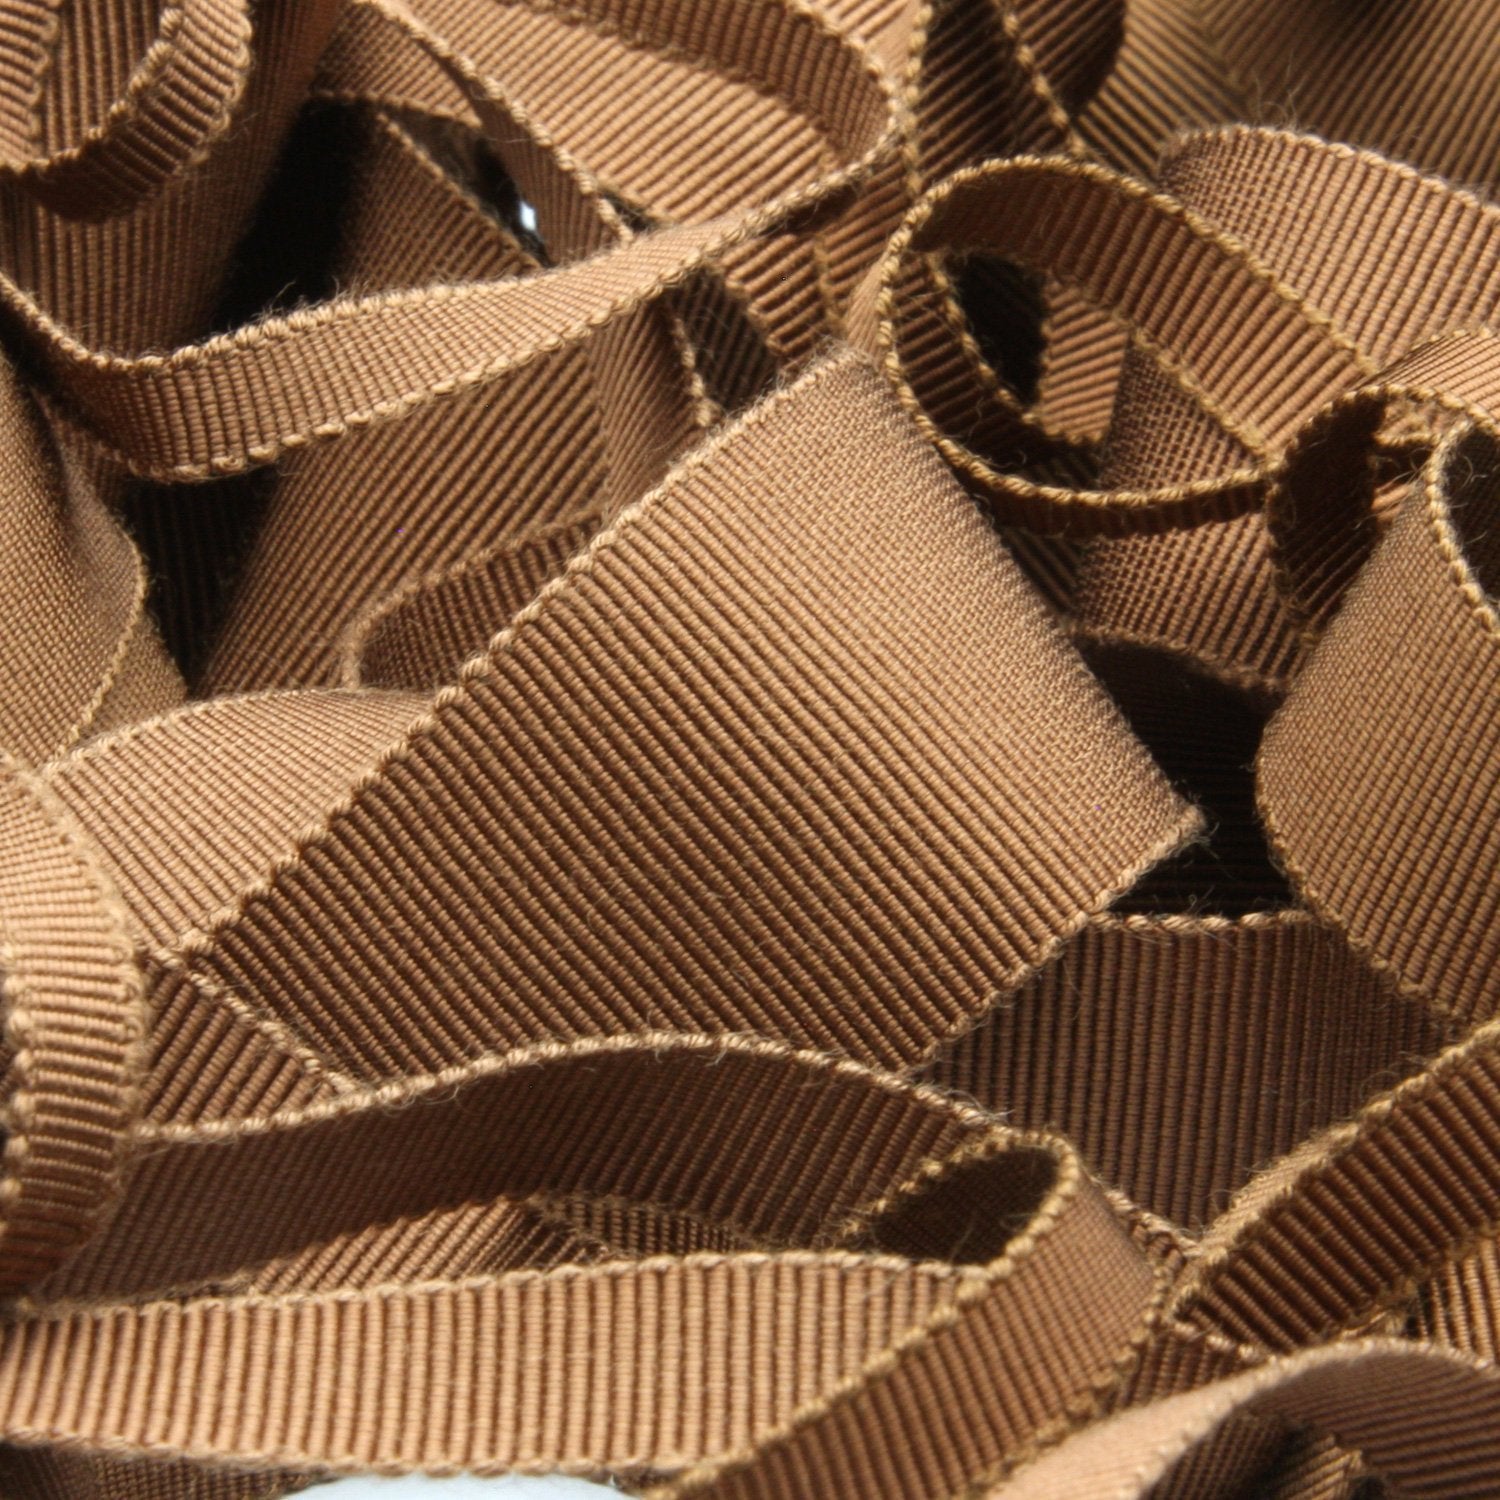 Wholesale] Rayon Grosgrain Ribbon 38mm (1-17/32) 30 Meters Roll